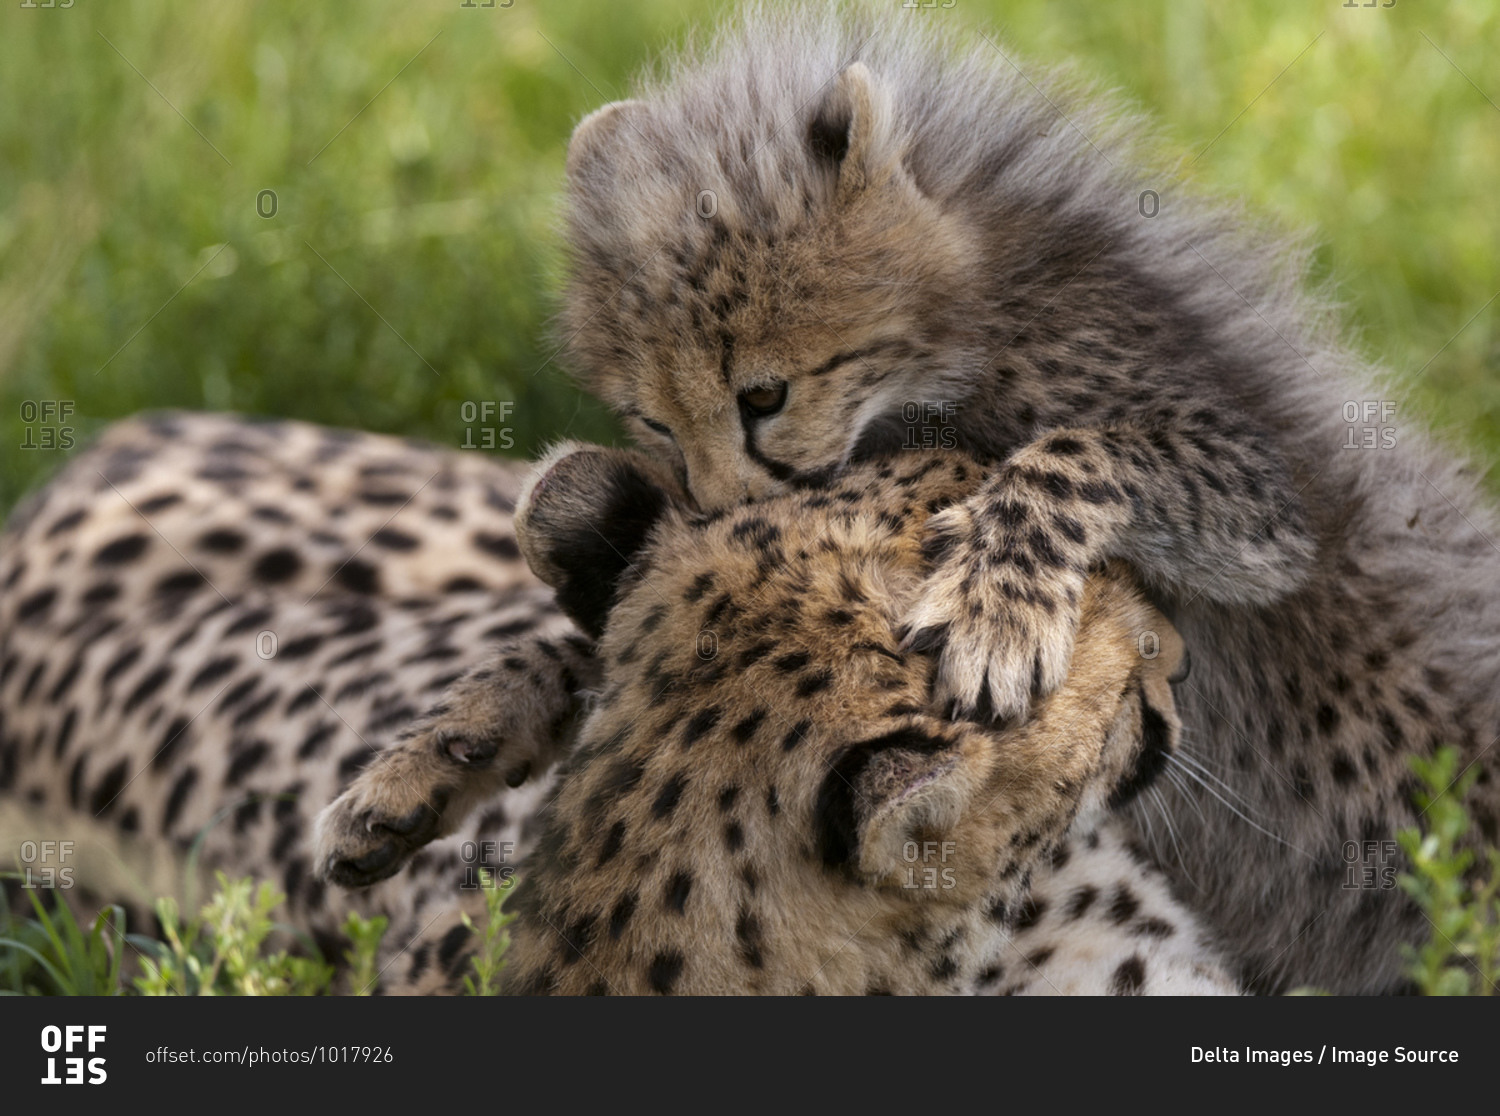 Cheetah (Acynonix jubatus) and cub, Masai Mara National Reserve, Kenya